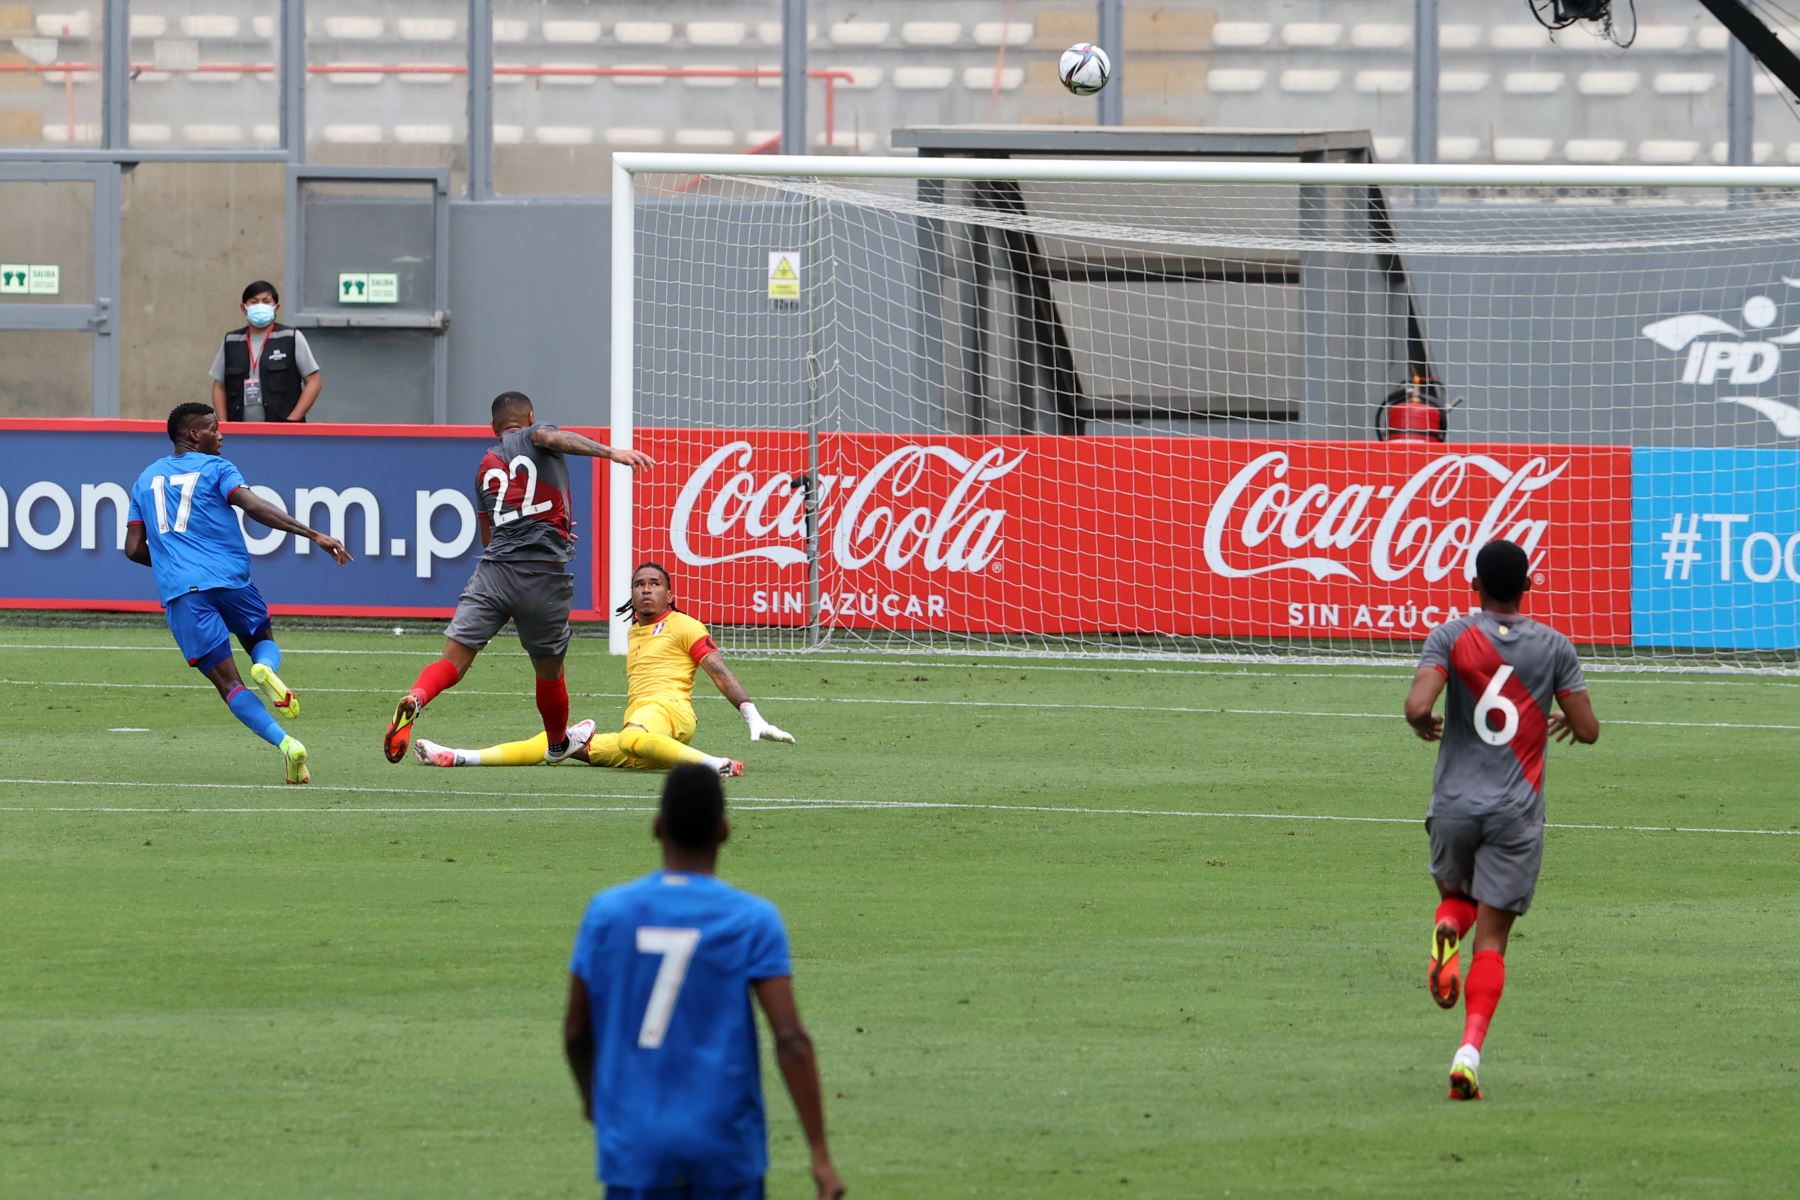 La selección peruana enfrenta a la selección de Panamá en un partido amistoso de preparación antes de enfrentar a Colombia por las eliminatorias a Catar 2022. Foto: ANDINA/Vidal Tarqui